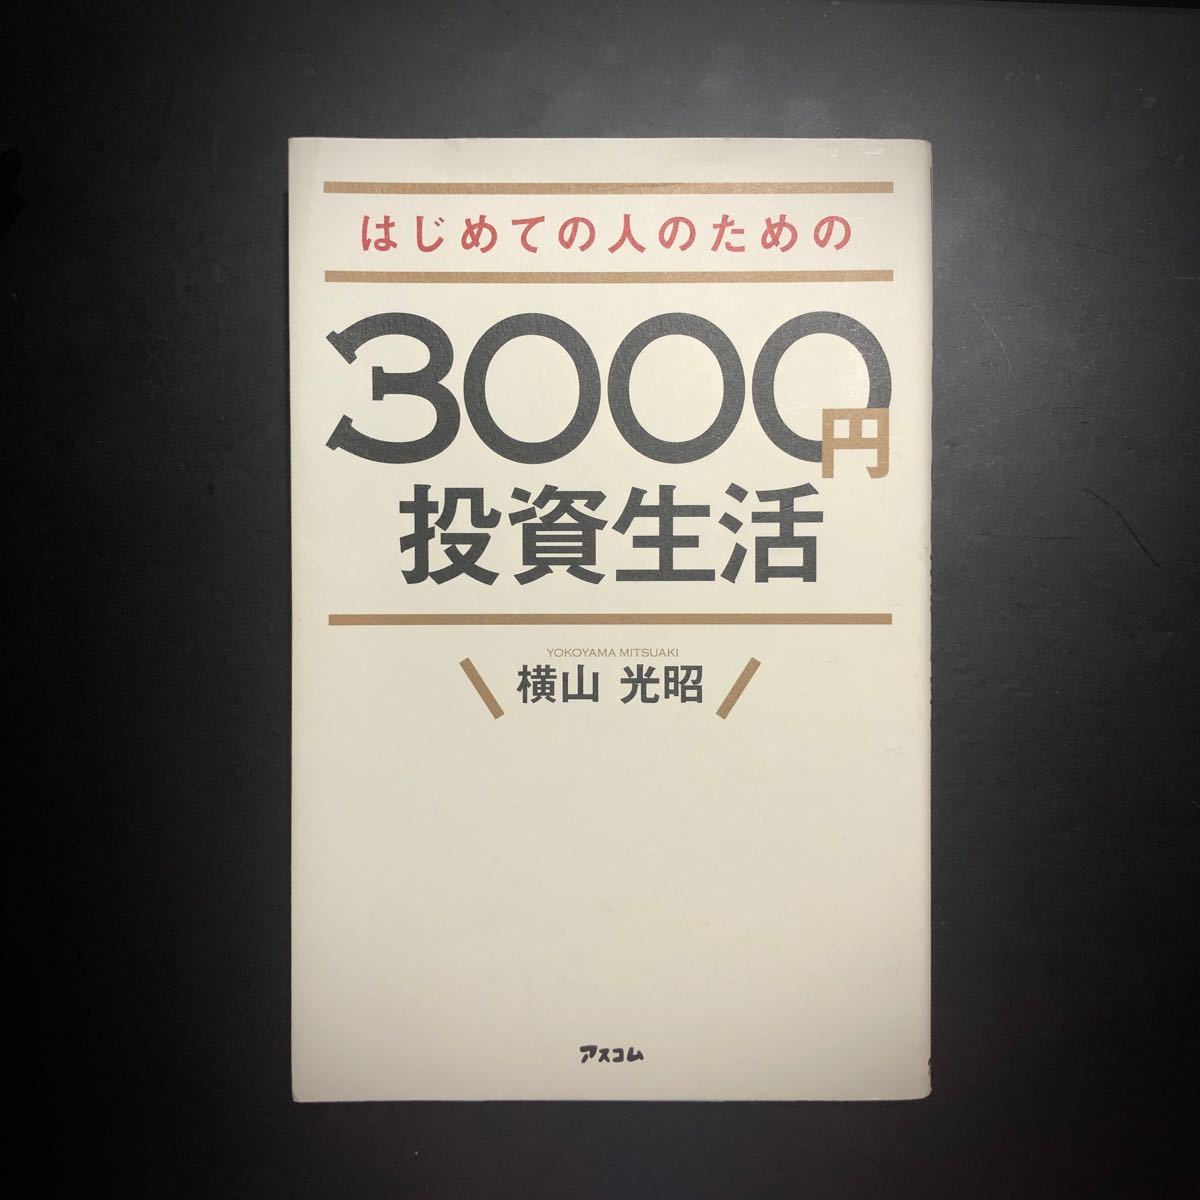 はじめての人のための3000円投資生活 (横山光昭)